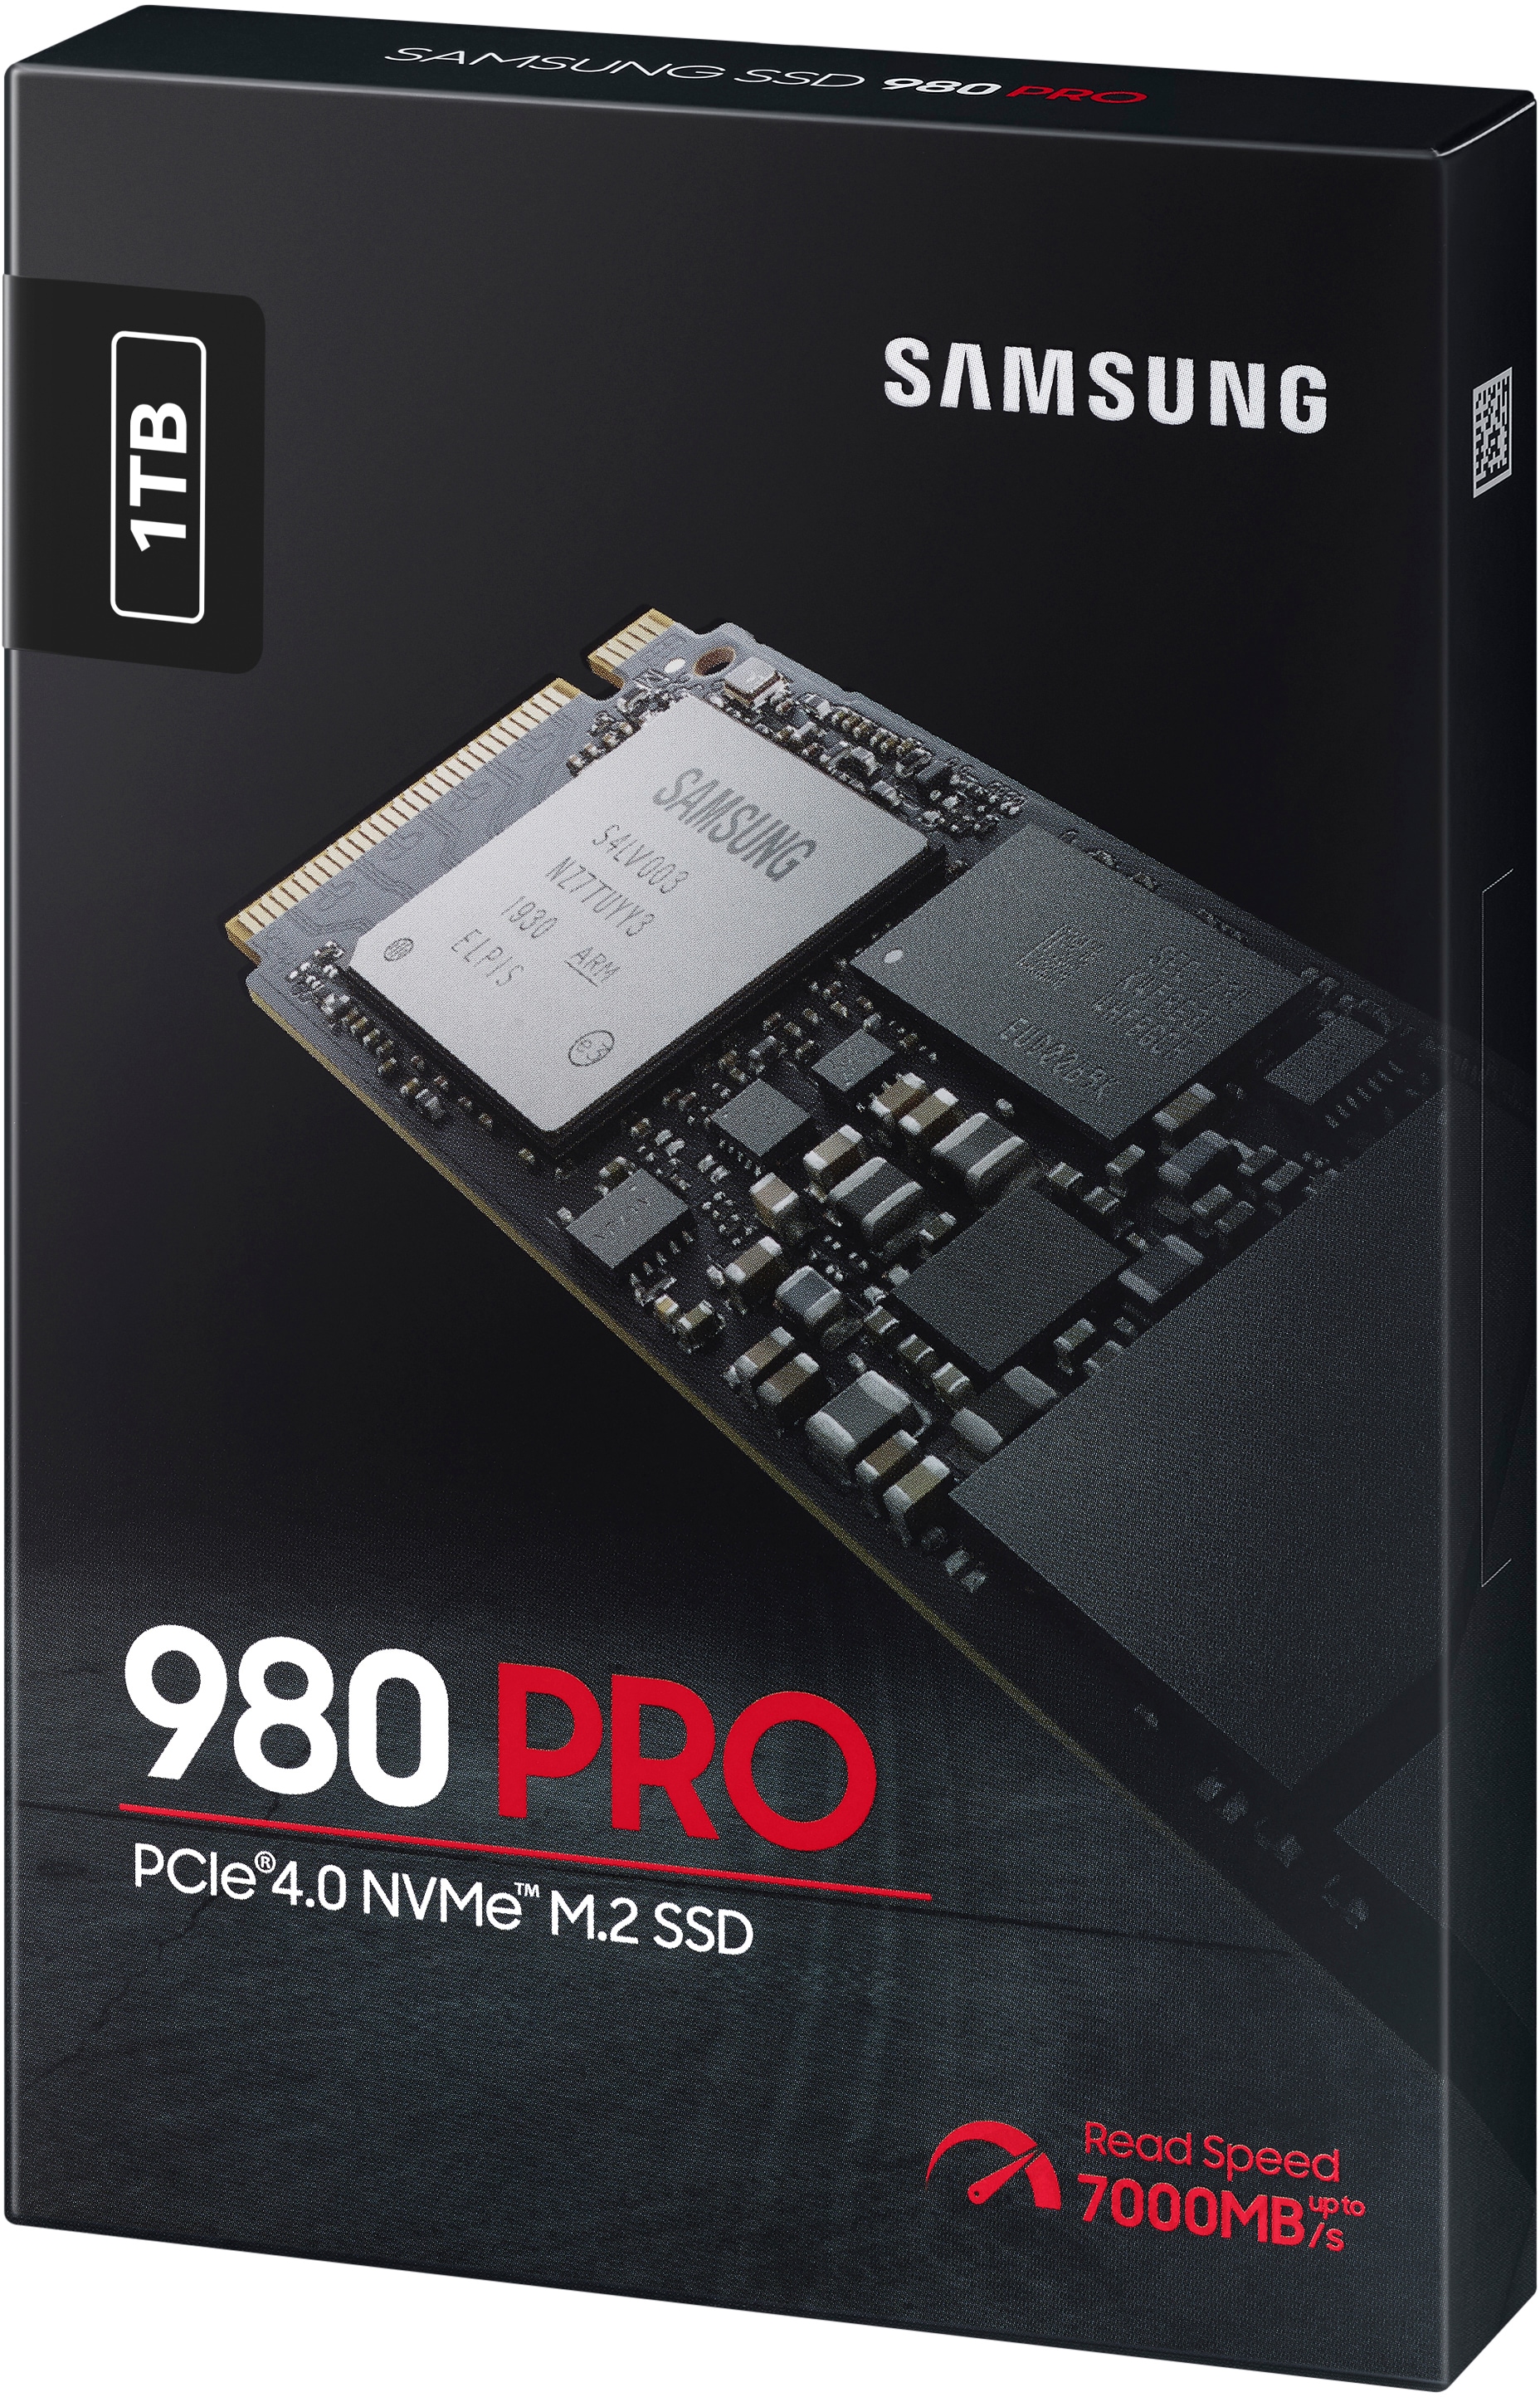 Samsung interne SSD »980 PRO«, Anschluss M.2 PCIe 4.0, Playstation 5  kompatibel, PCIe® 4.0 NVMe™, M.2 bestellen bei OTTO | SSD-Festplatten